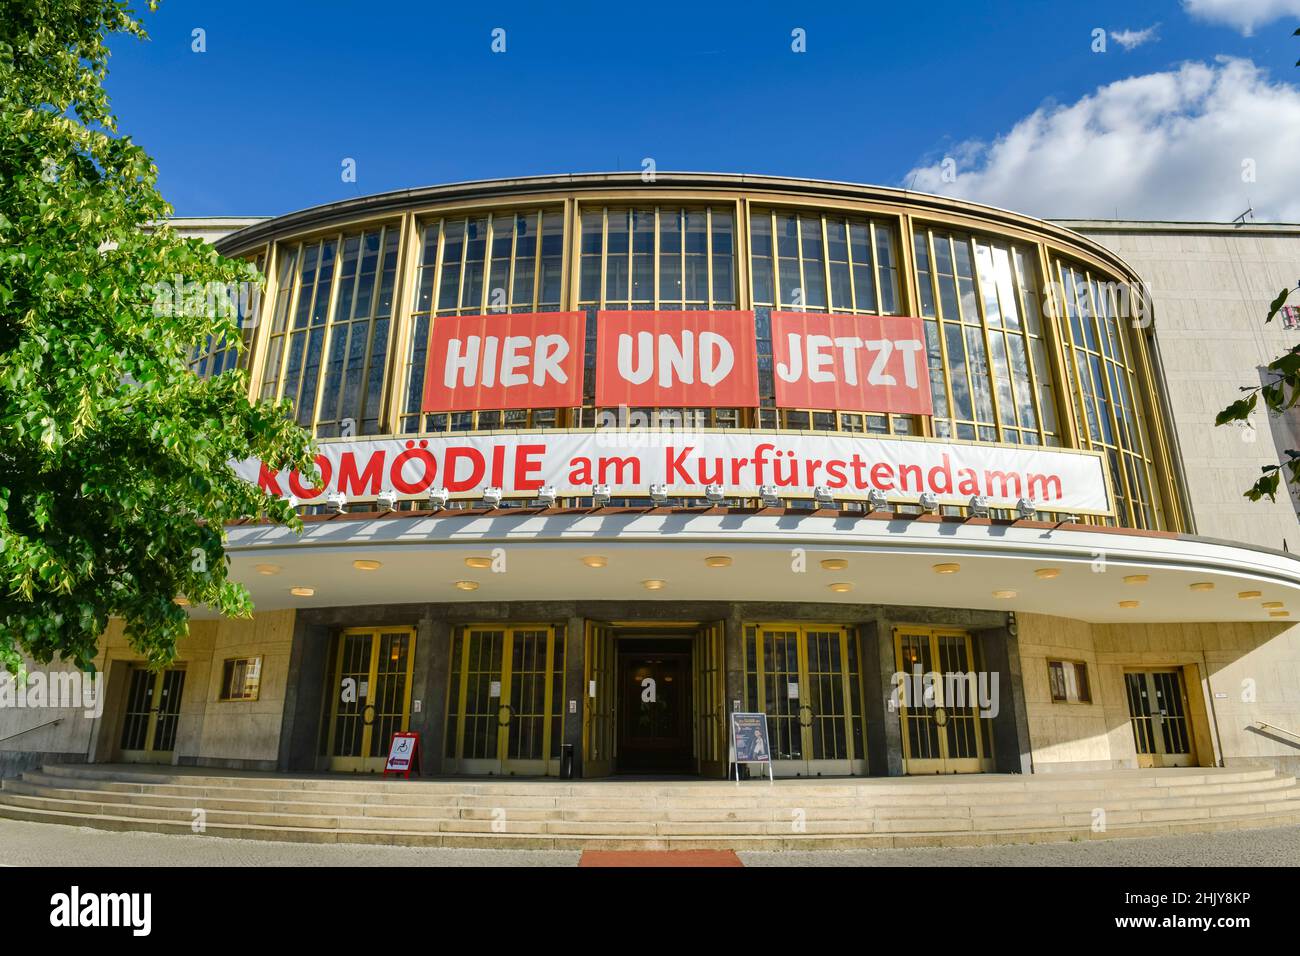 Komödie am Kurfürstendamm im Schillertheater, Bismarckstraße, Charlottenburg, Berlin, Deutschland Stock Photo